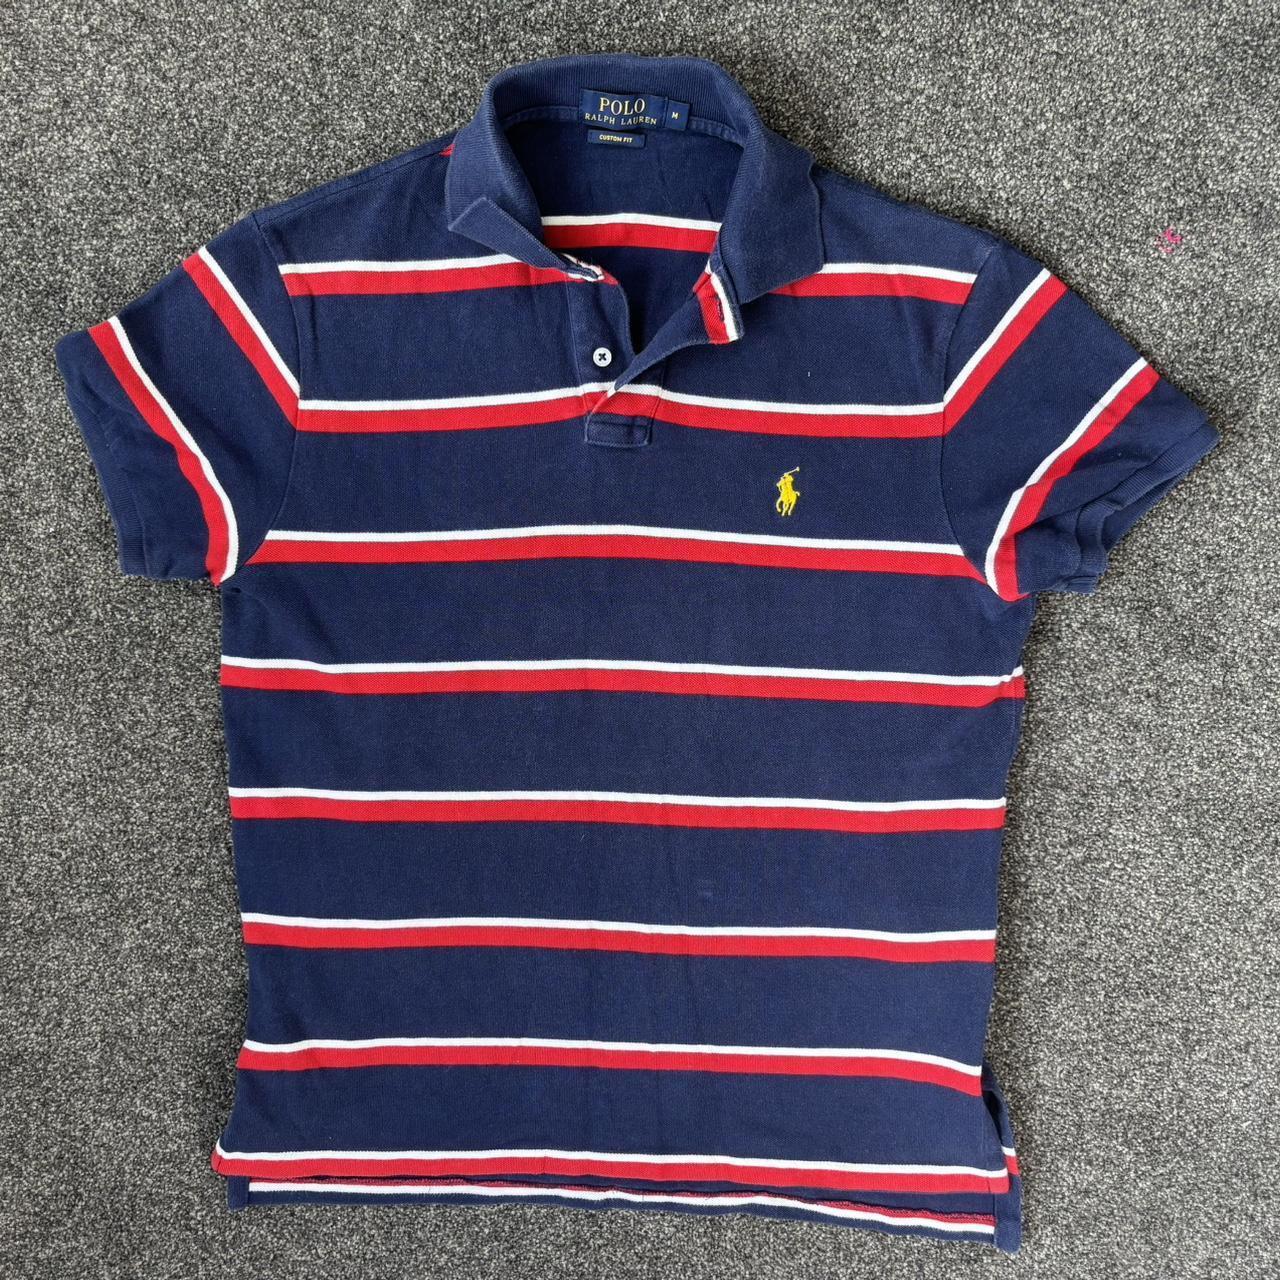 Polo Ralph Lauren men’s medium polo shirt - Depop